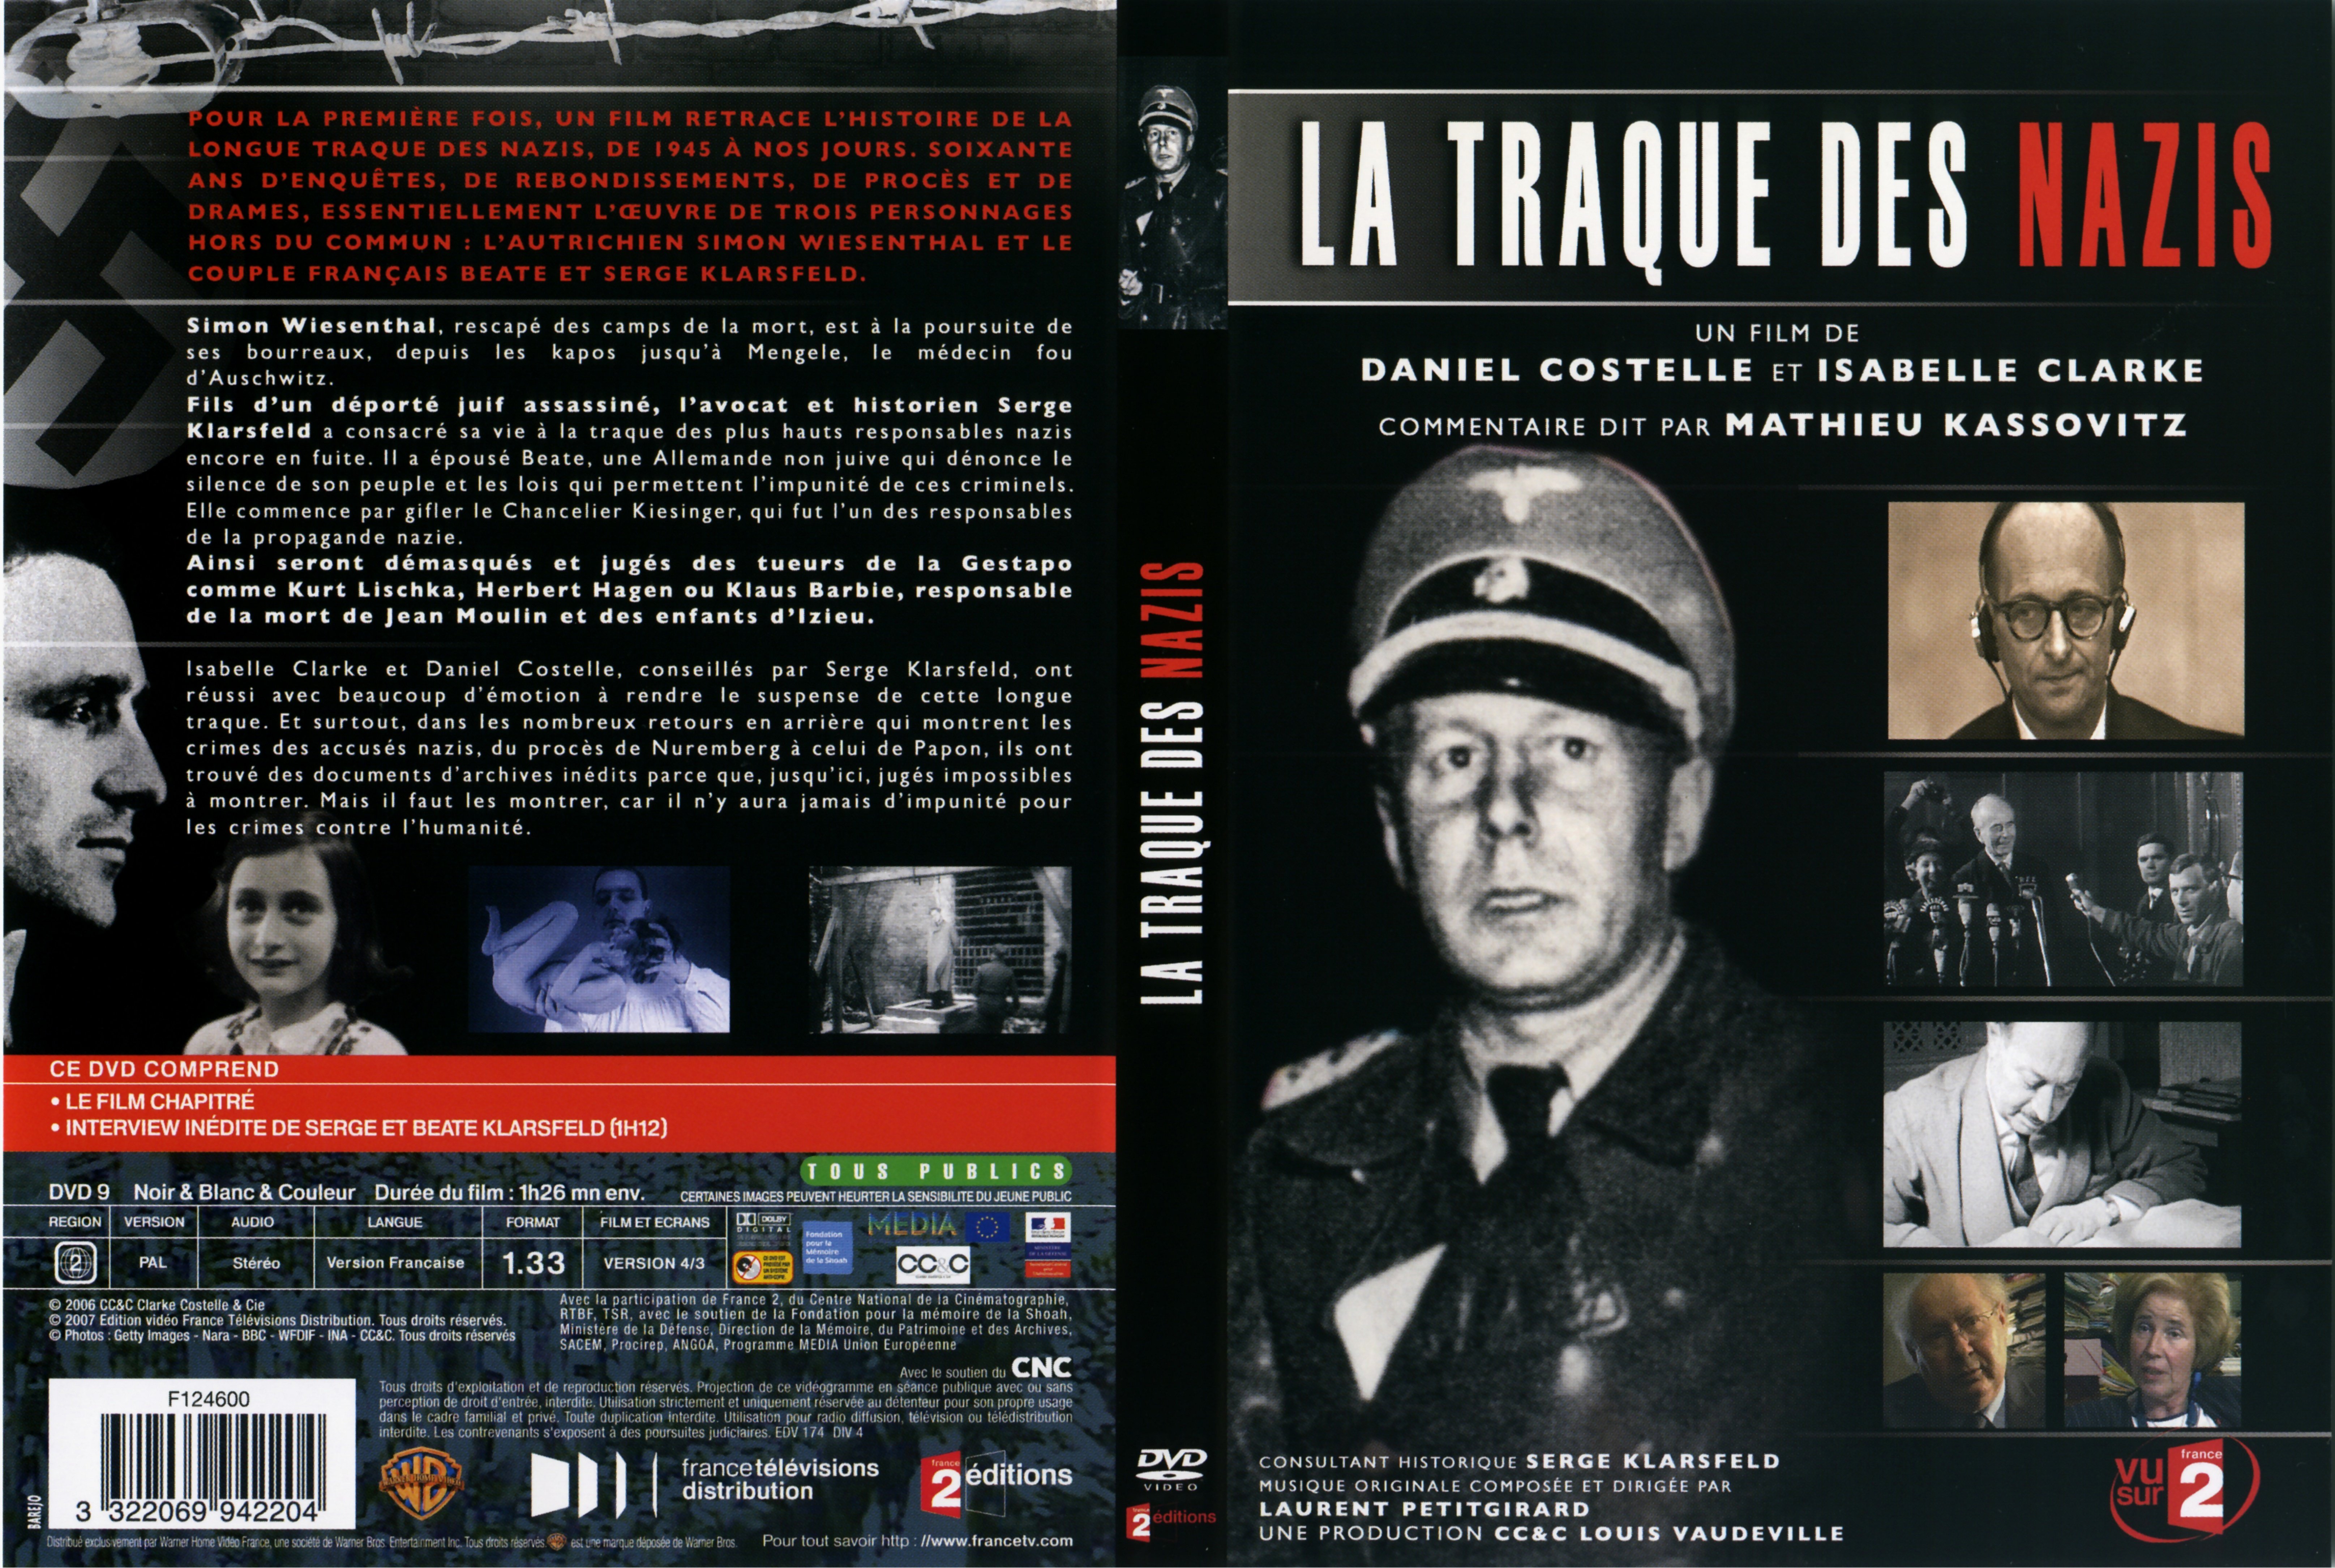 Jaquette DVD La traque des nazis